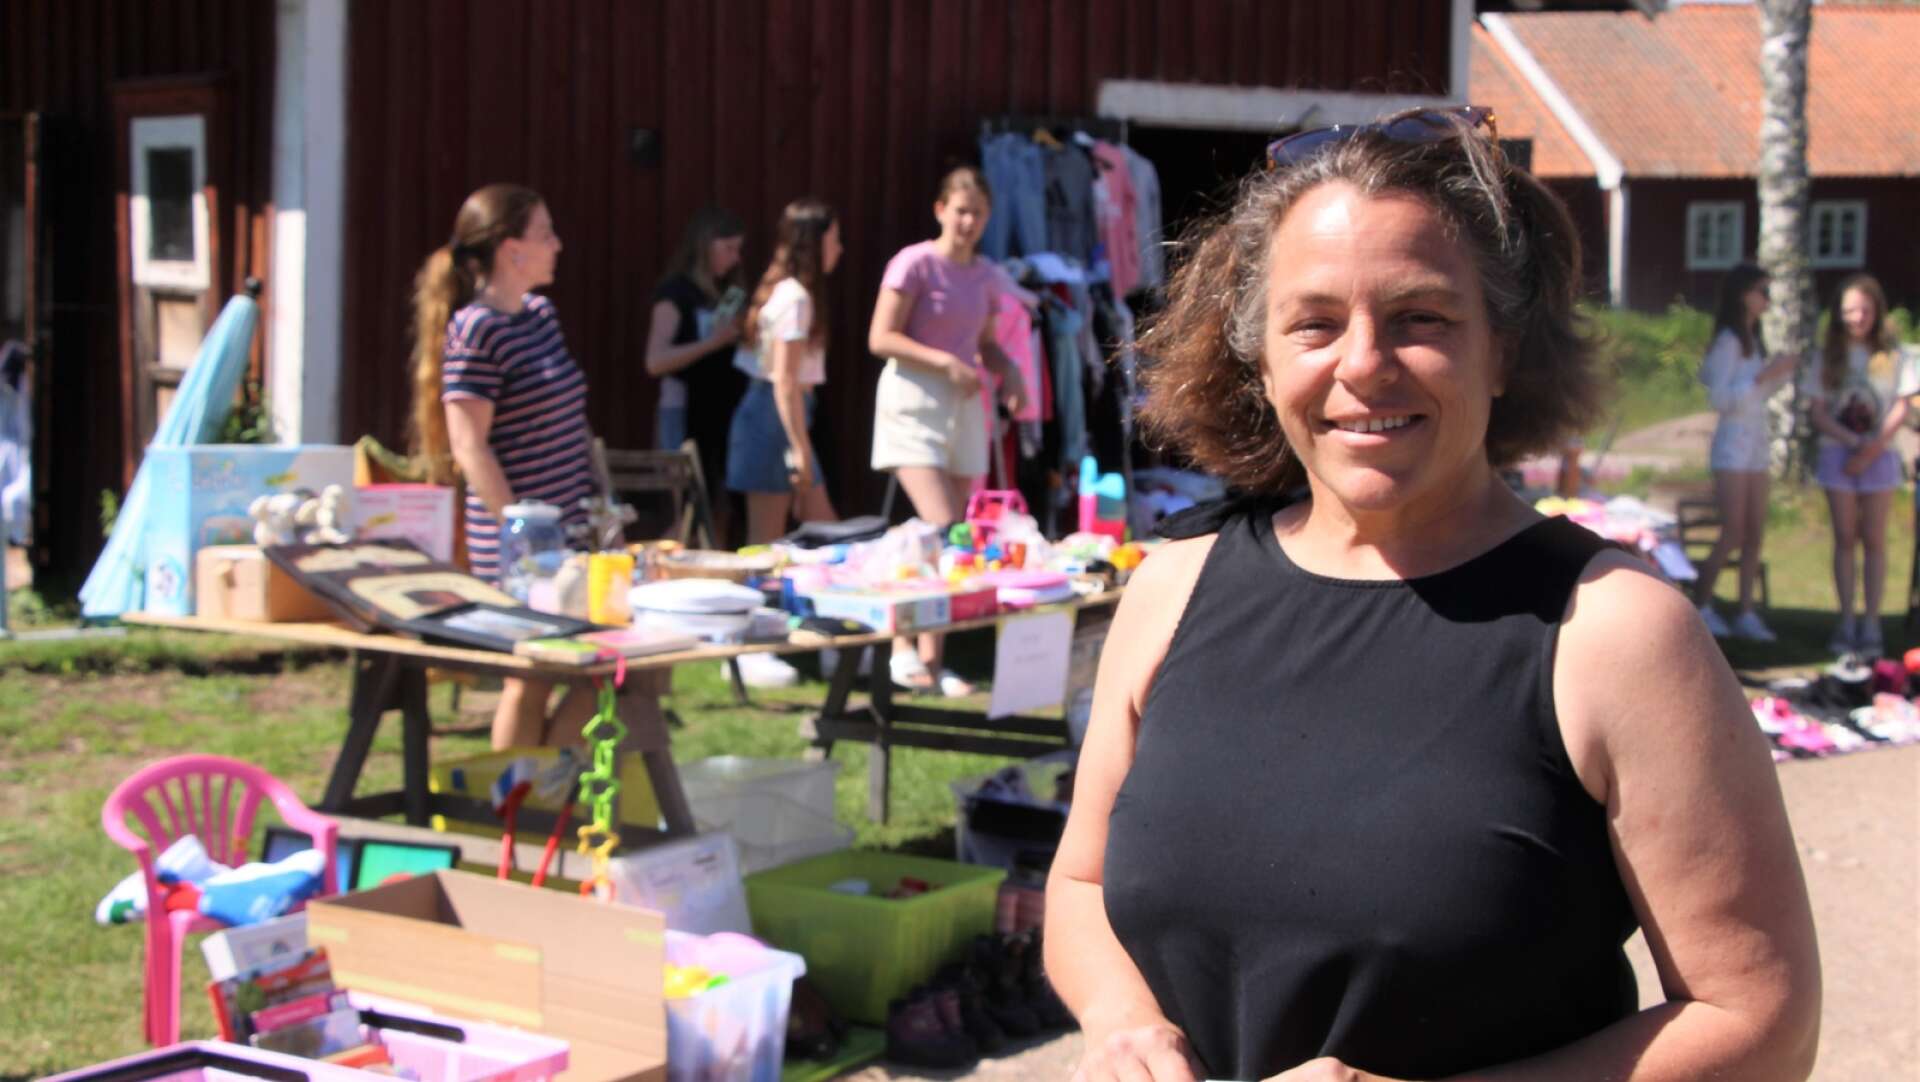 30 olika loppisar förvandlade Sjötorp till en kommersens högborg under lördagen. Catrine Sjöström, en av initiativtagarna, var nöjd med dagen.